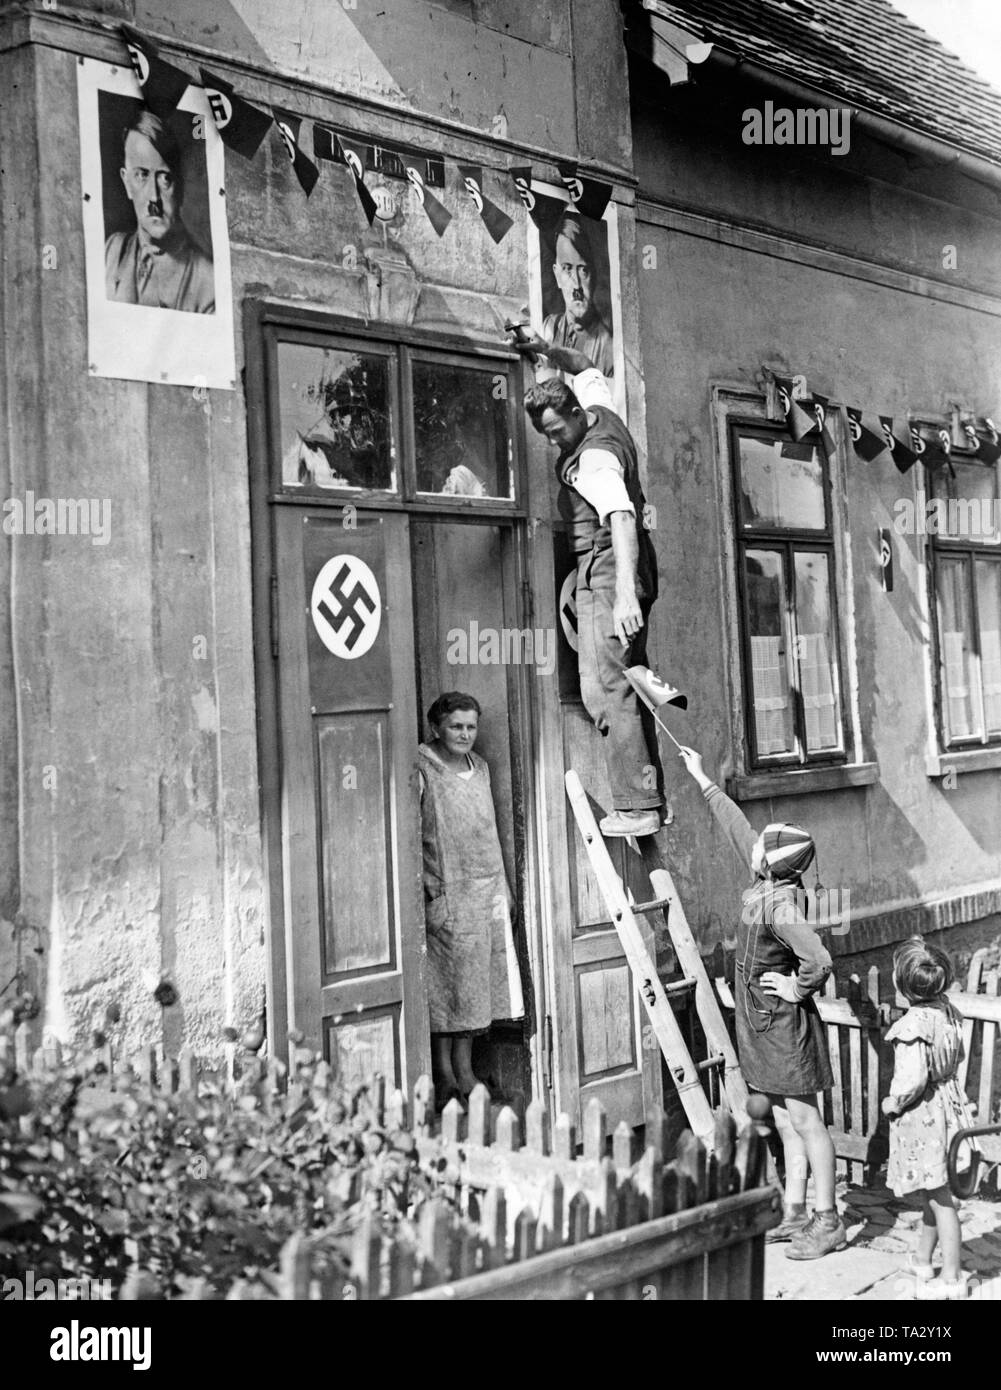 Résidents d'une maison à Rumburk fixez croix gammée des drapeaux et des portraits d'Hitler à leur mur de la maison le 30 septembre 1938, en l'honneur de l'invasion des troupes allemandes pendant l'occupation des Sudètes. Banque D'Images